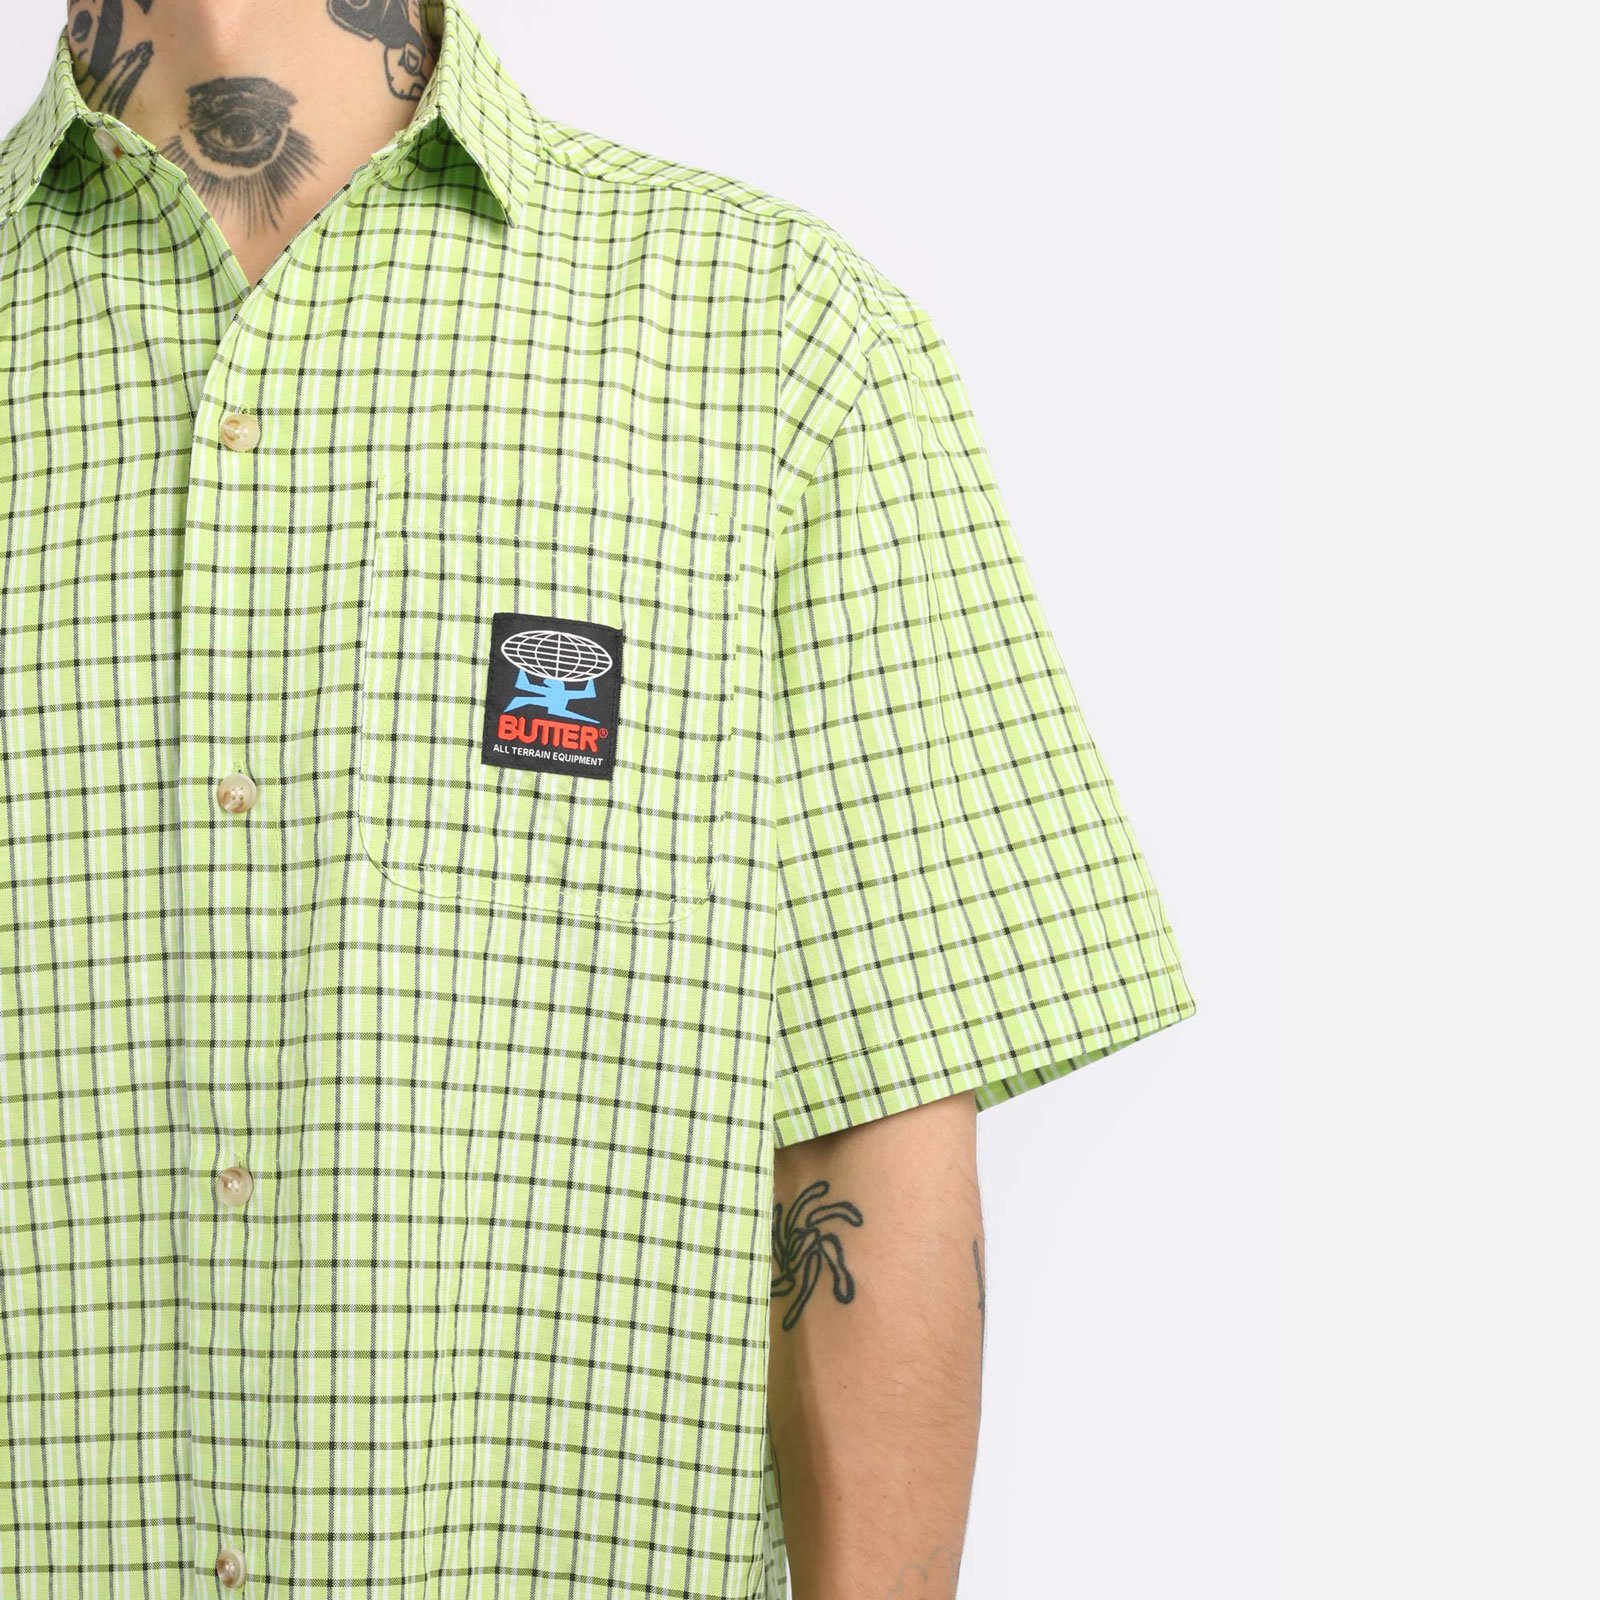 Мужская рубашка Butter Goods Terrain S/S Shirt (BGQ1242603)  - цена, описание, фото 4